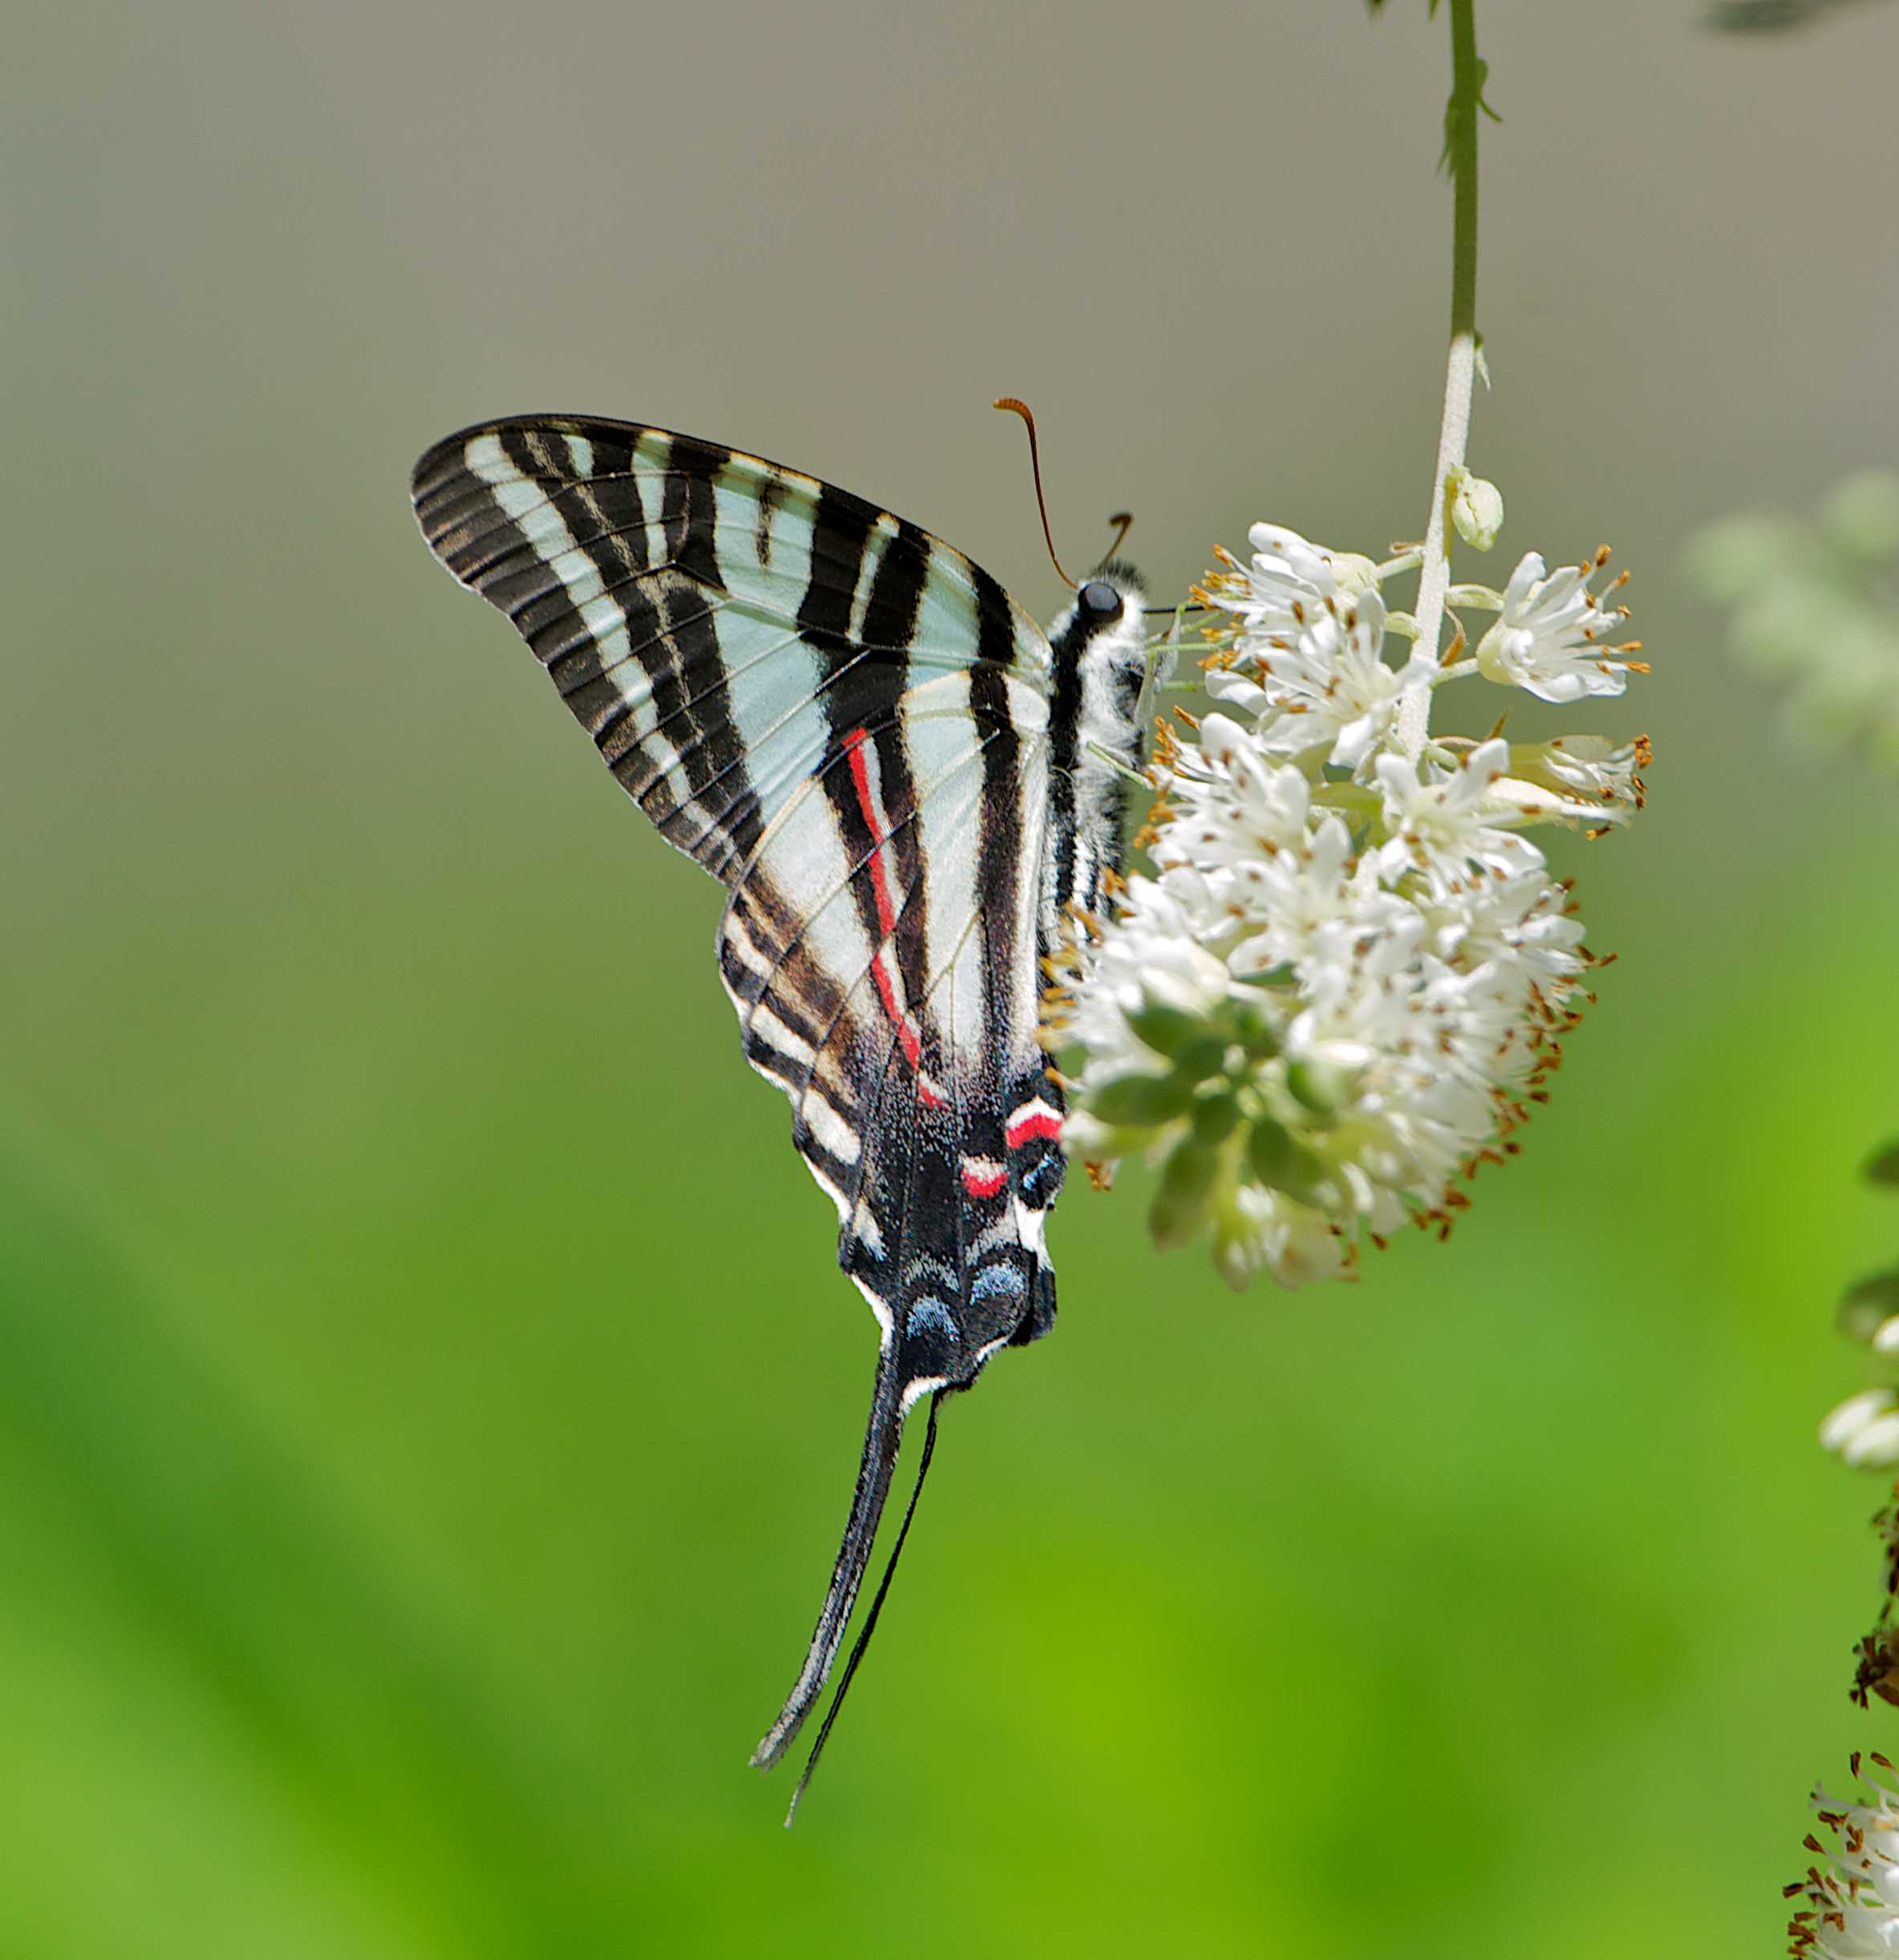 Zebra Swallowtail butterfly on a white flower